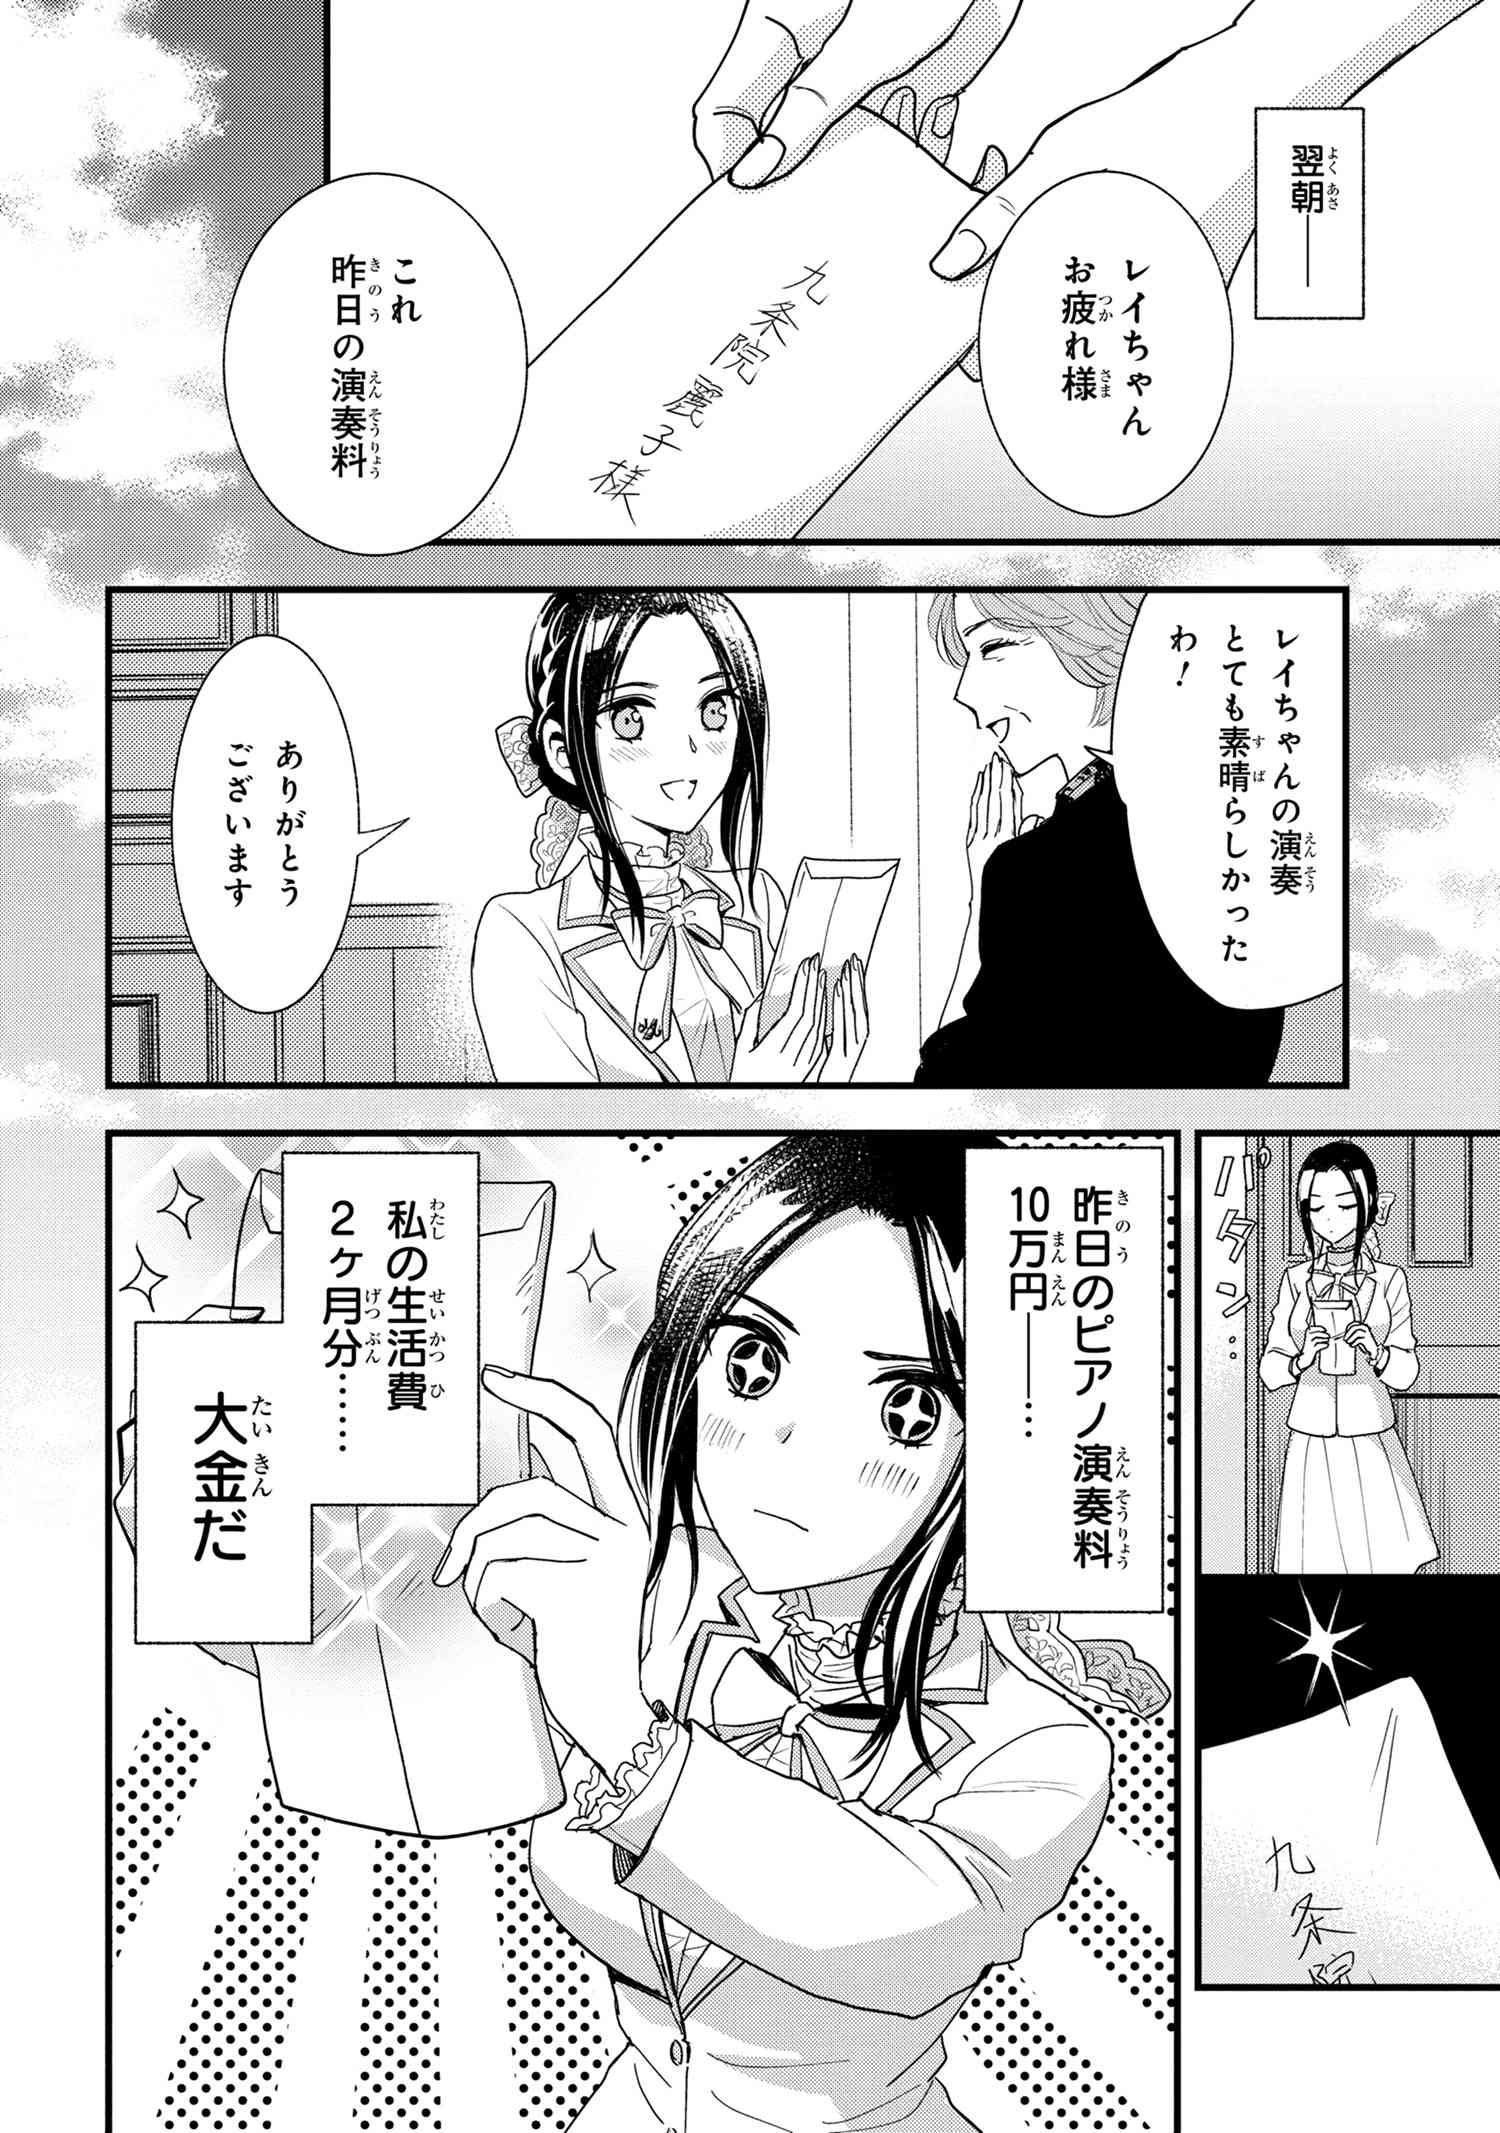 Reiko no Fuugi Akuyaku Reijou to Yobarete imasu ga, tada no Binbou Musume desu - Chapter 15-1 - Page 2